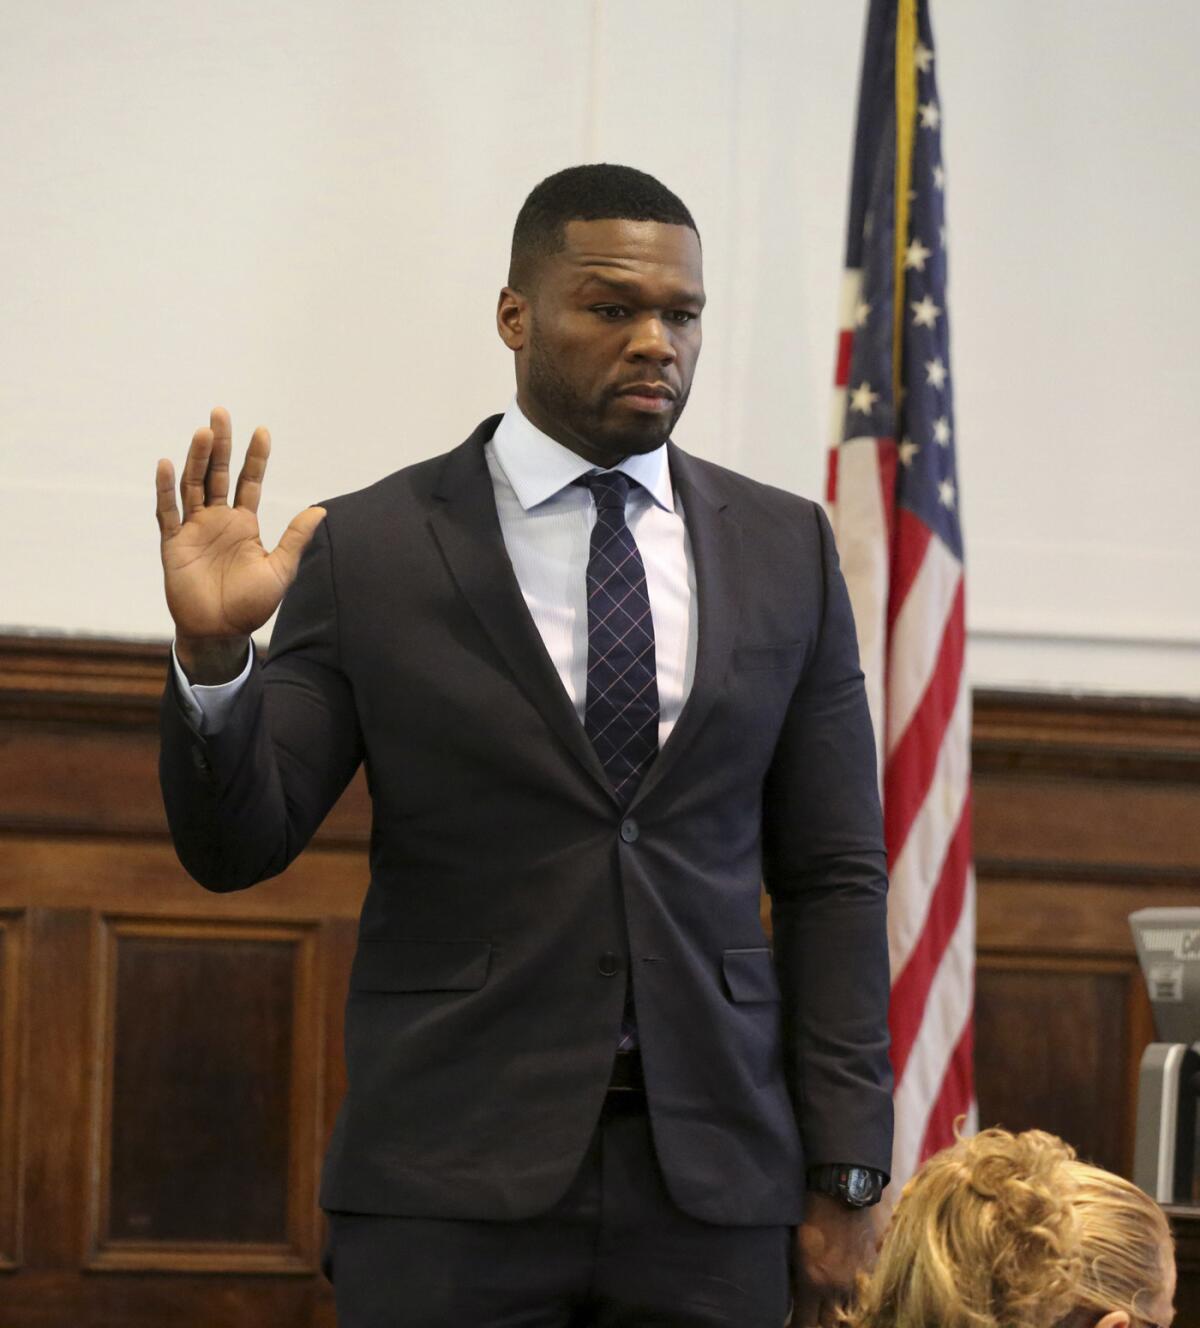 Curtis Jackson, más conocido como 50 Cent, comparece en el Tribunal Superior en Manhattan el martes 21 de julio del 2015 para declarar en una demanda por un video sexual que presuntamente publicó sin autorización en internet. (Jefferson Siegel/New York Daily News/POOL)